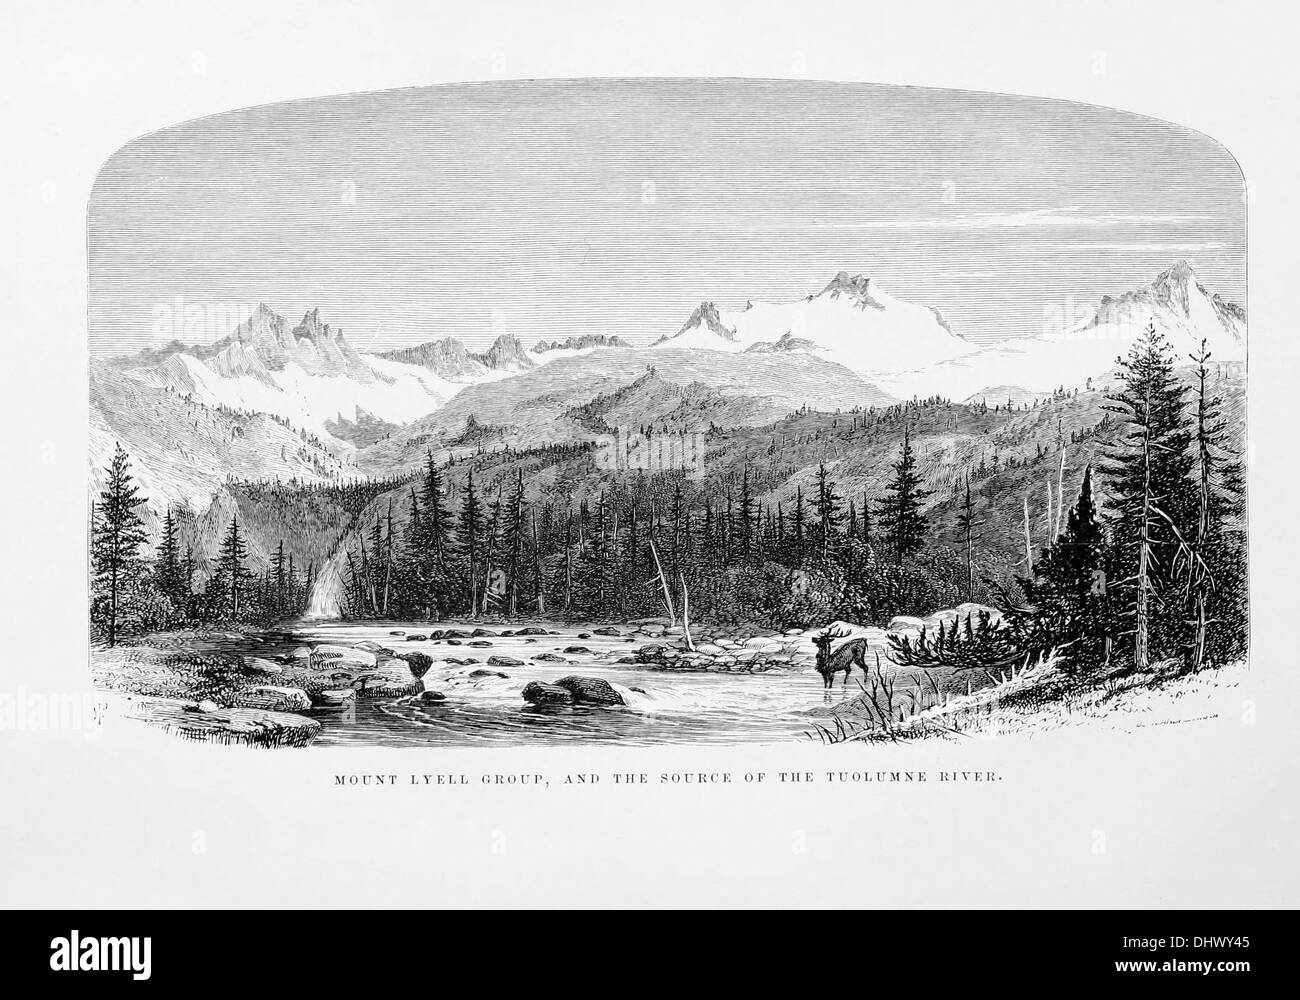 Mount Lyell-Gruppe und die Quelle des Tuolumne River, alte Lithographie Stockfoto